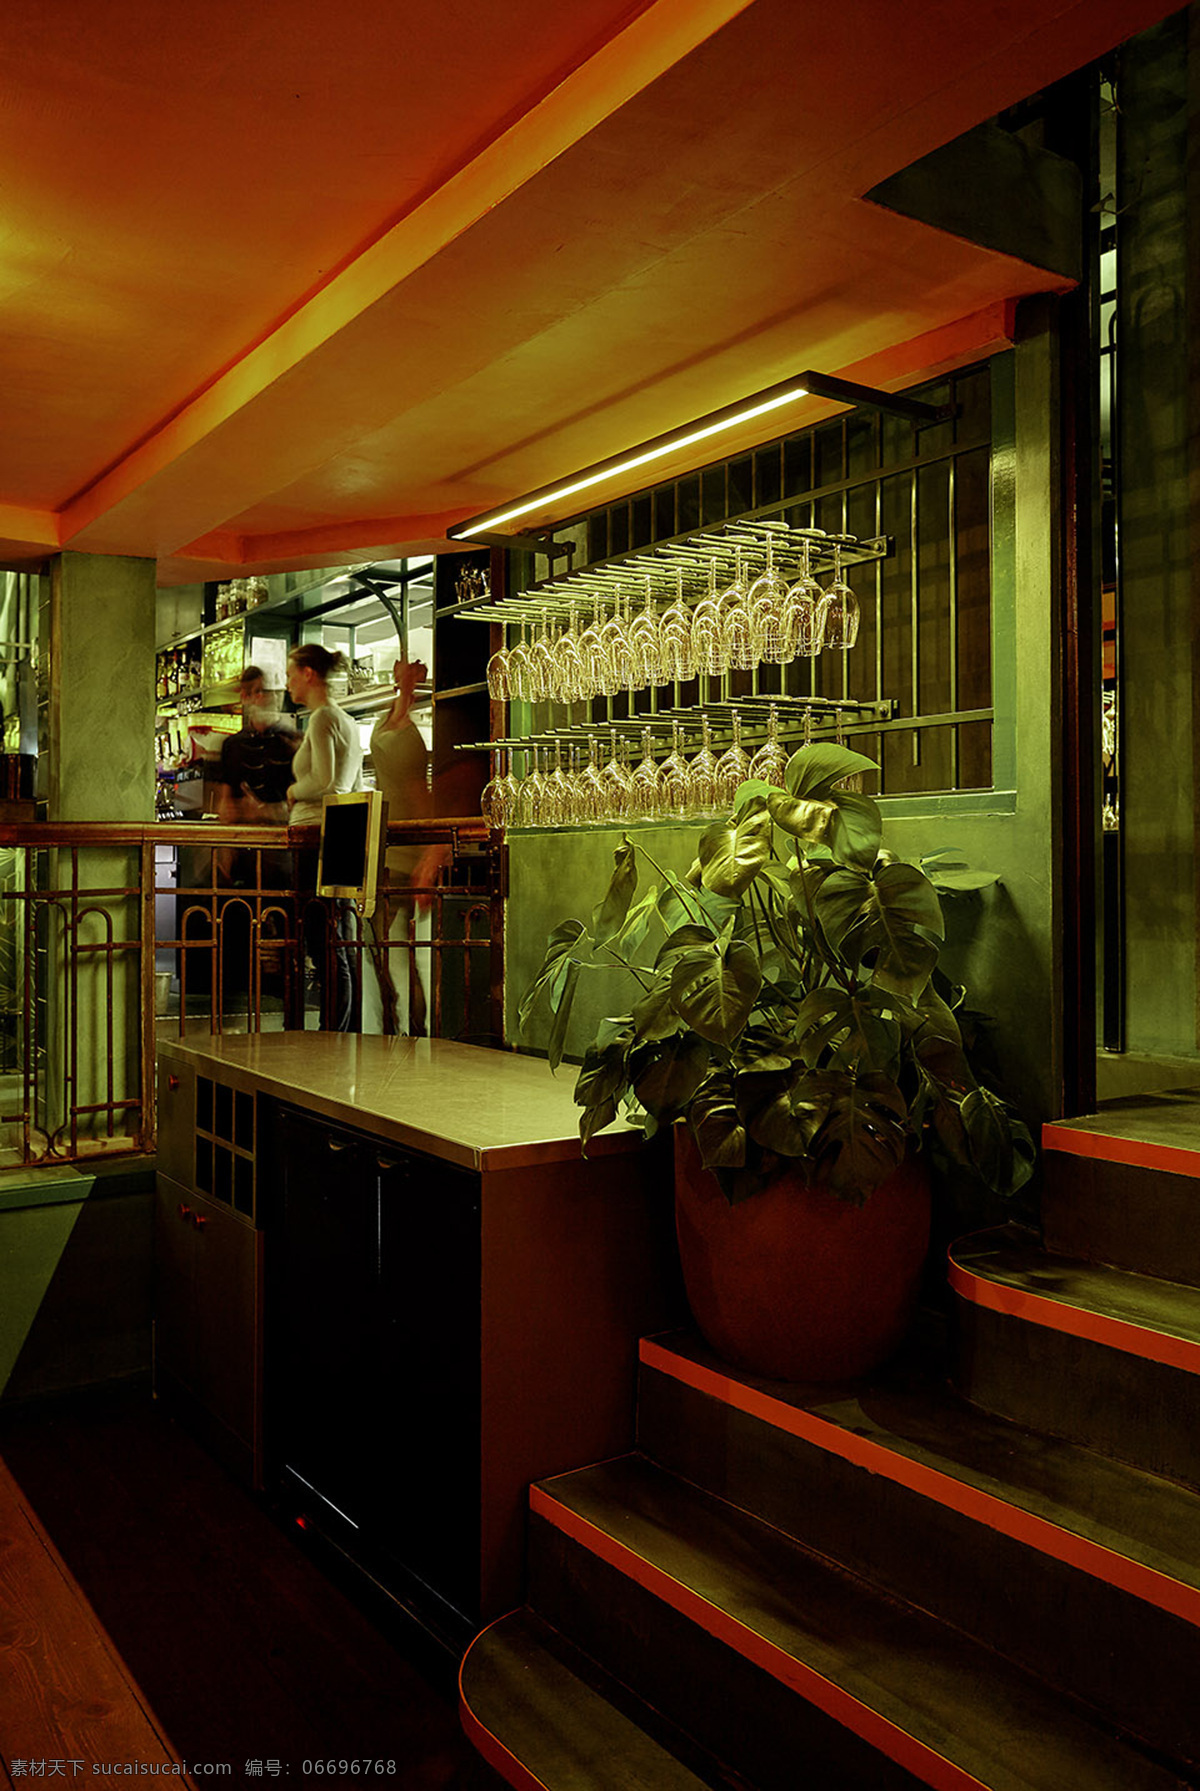 酒吧 餐厅 饮料 清吧 咖啡 灯光 喝酒 音乐 外国餐厅 欧式餐厅 西式餐厅 西餐 洋酒 红酒 建筑园林 室内摄影